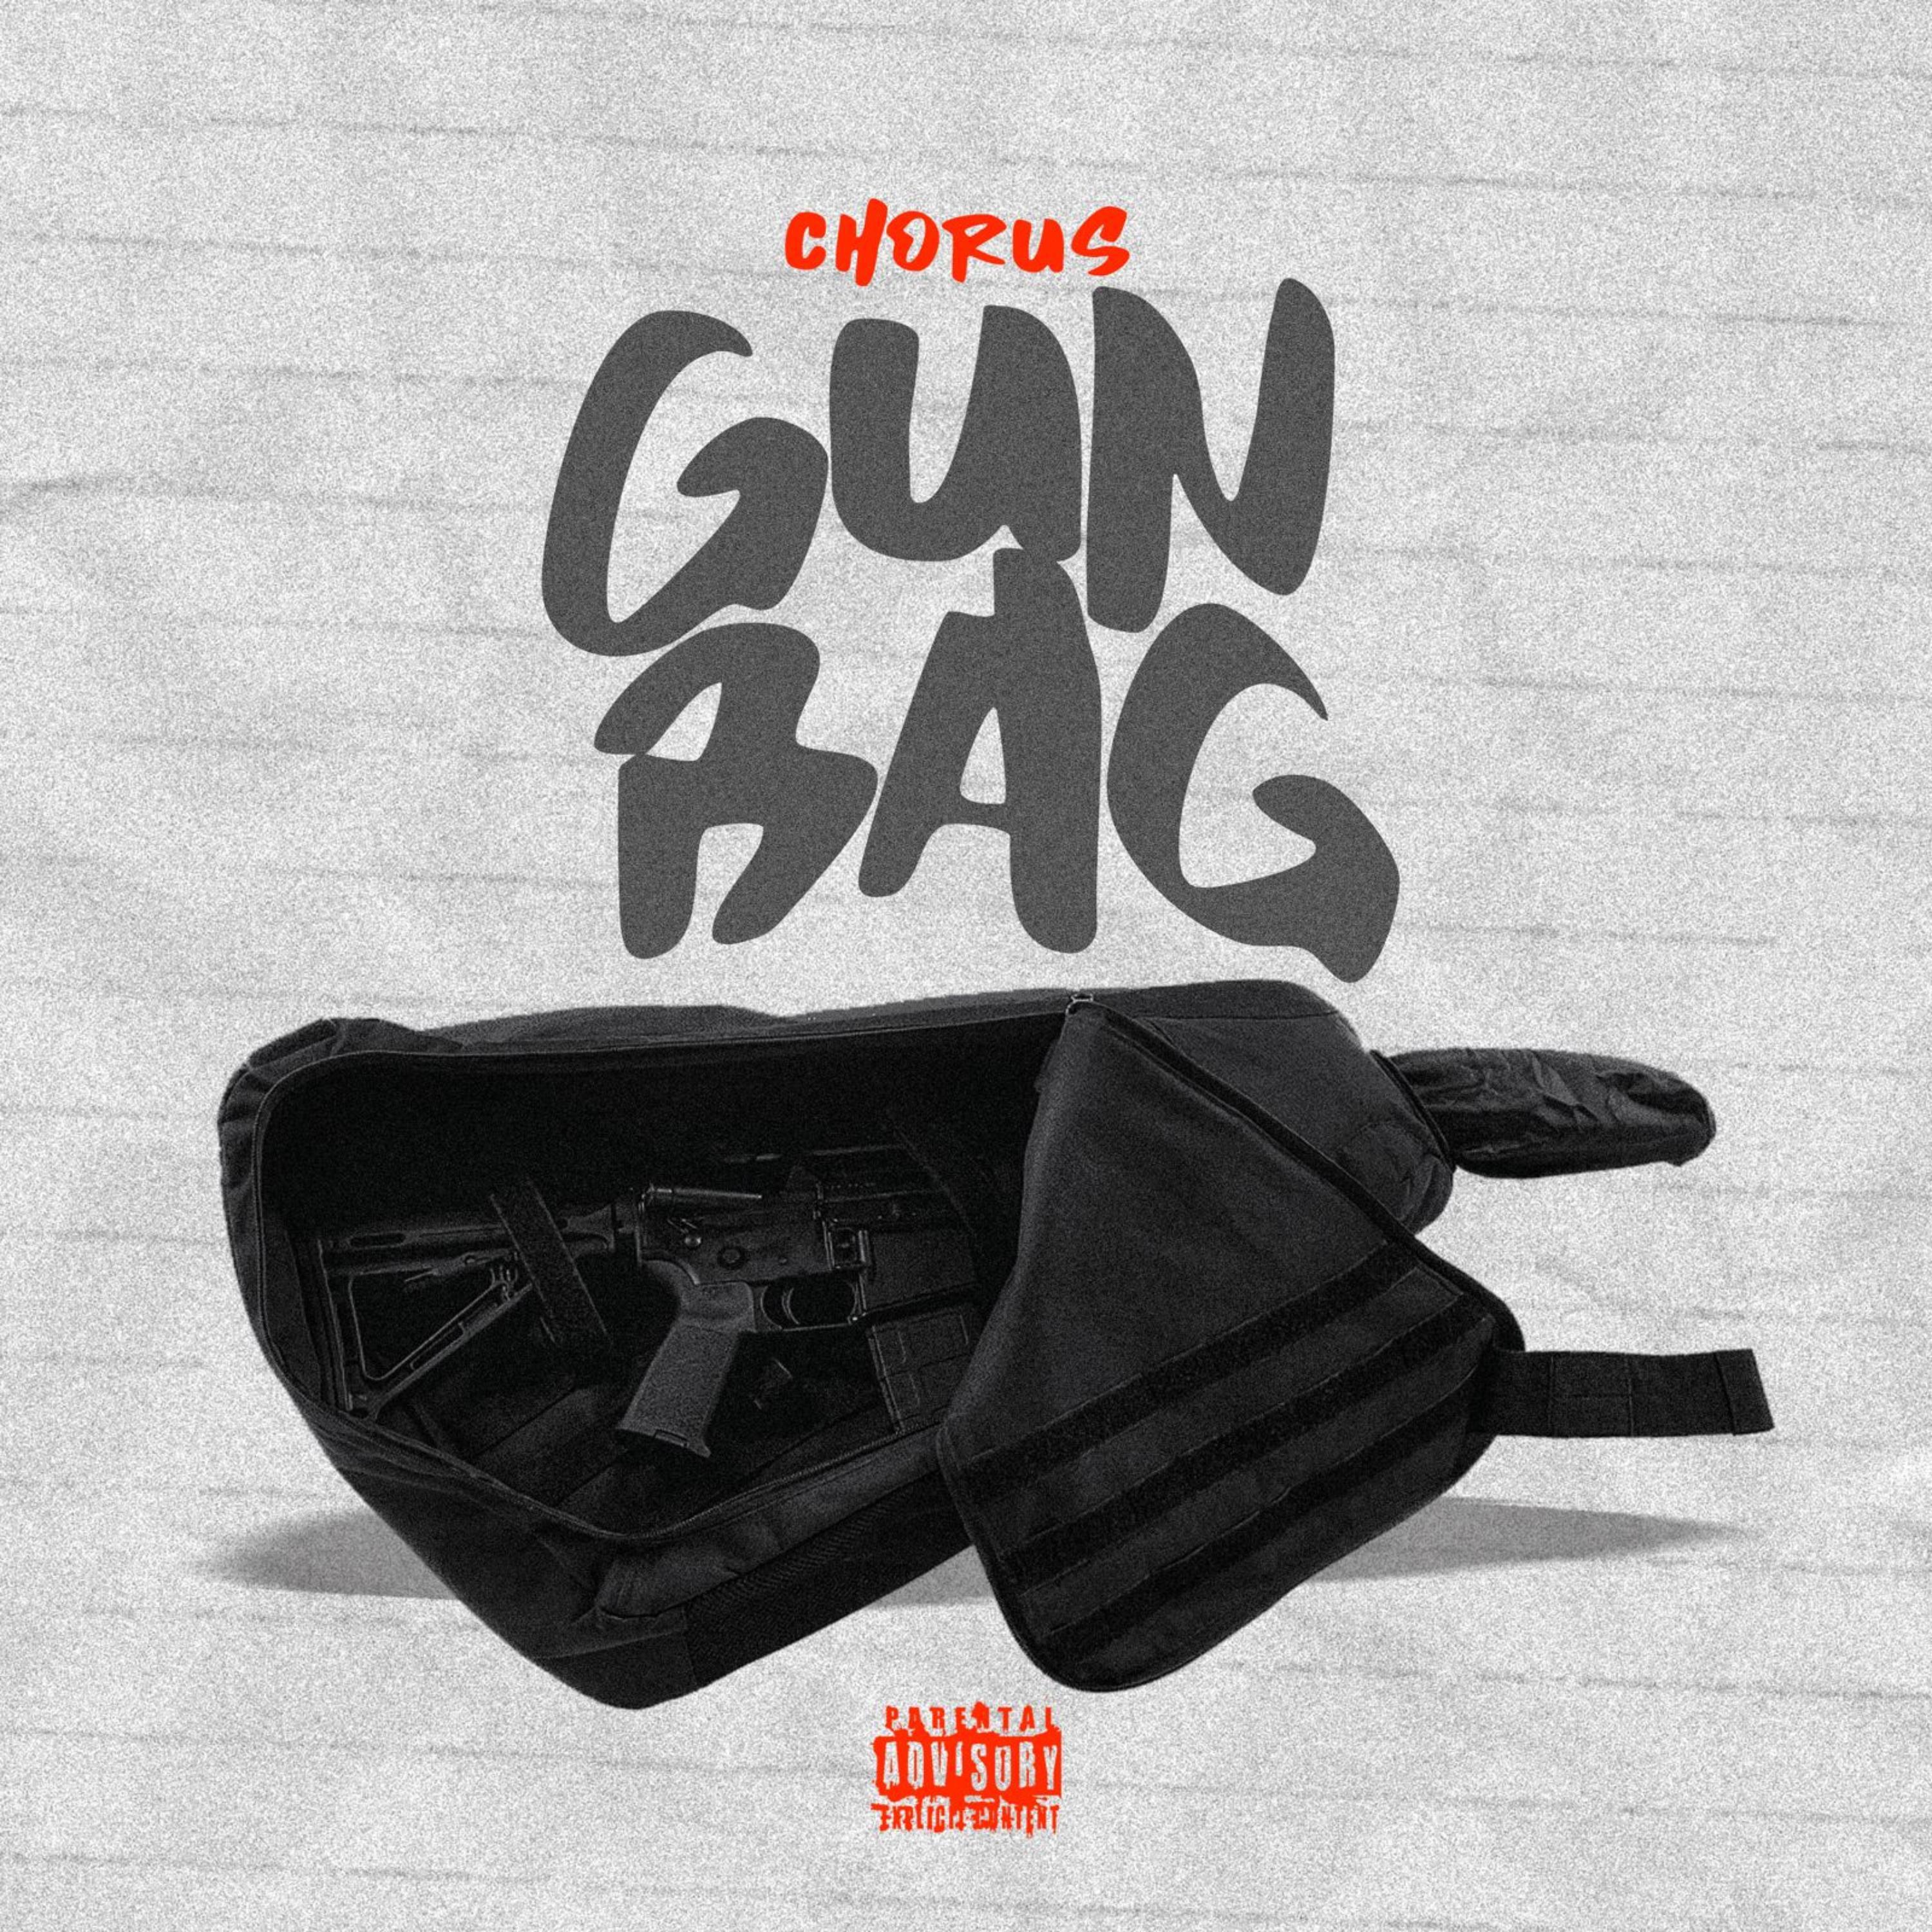 Chorus - Gun bag